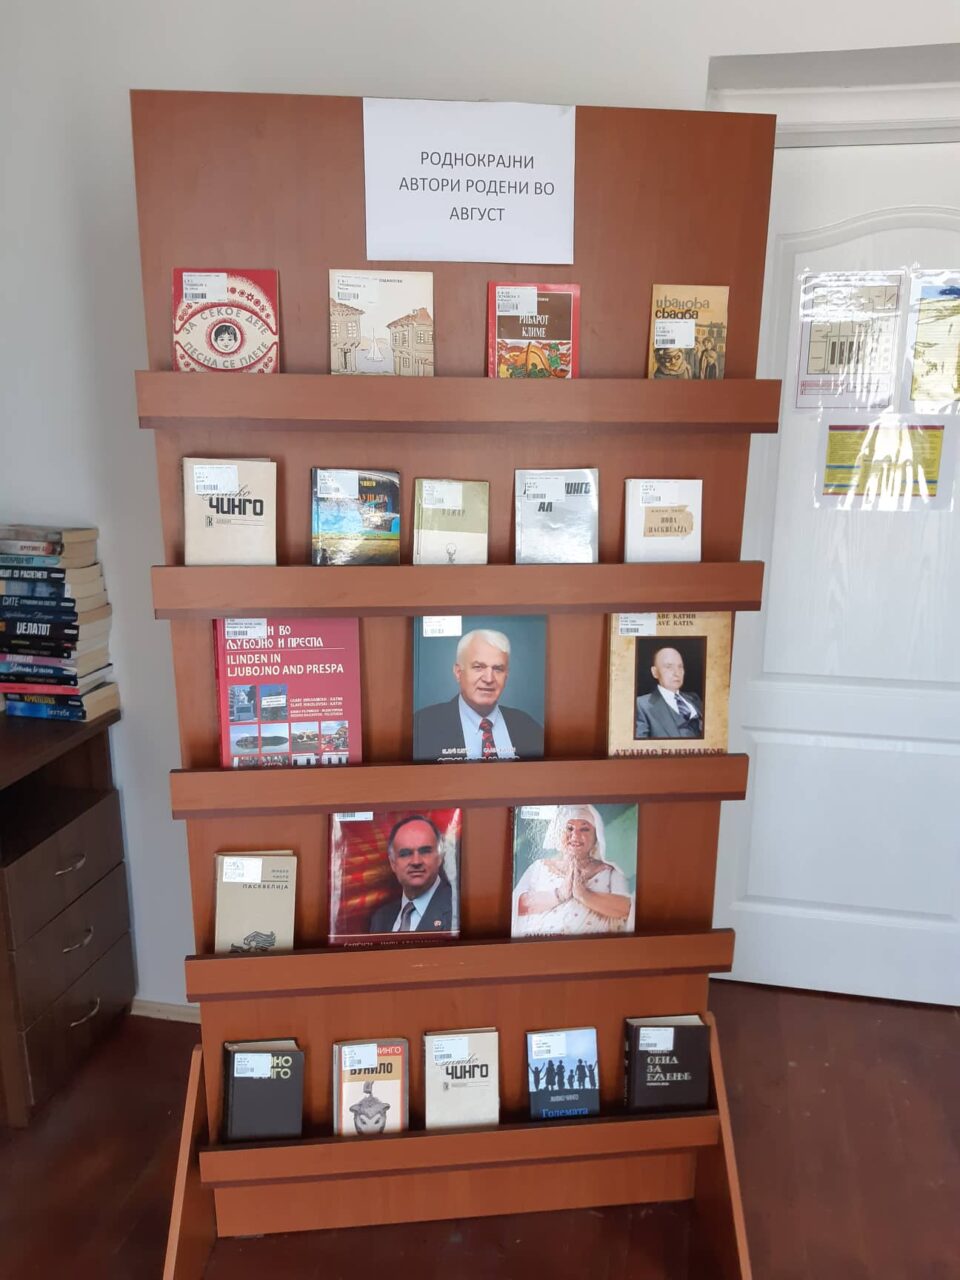 Изложба на книги од роднокрајни автори во Библиотеката „Григор Прличев“ во Охрид